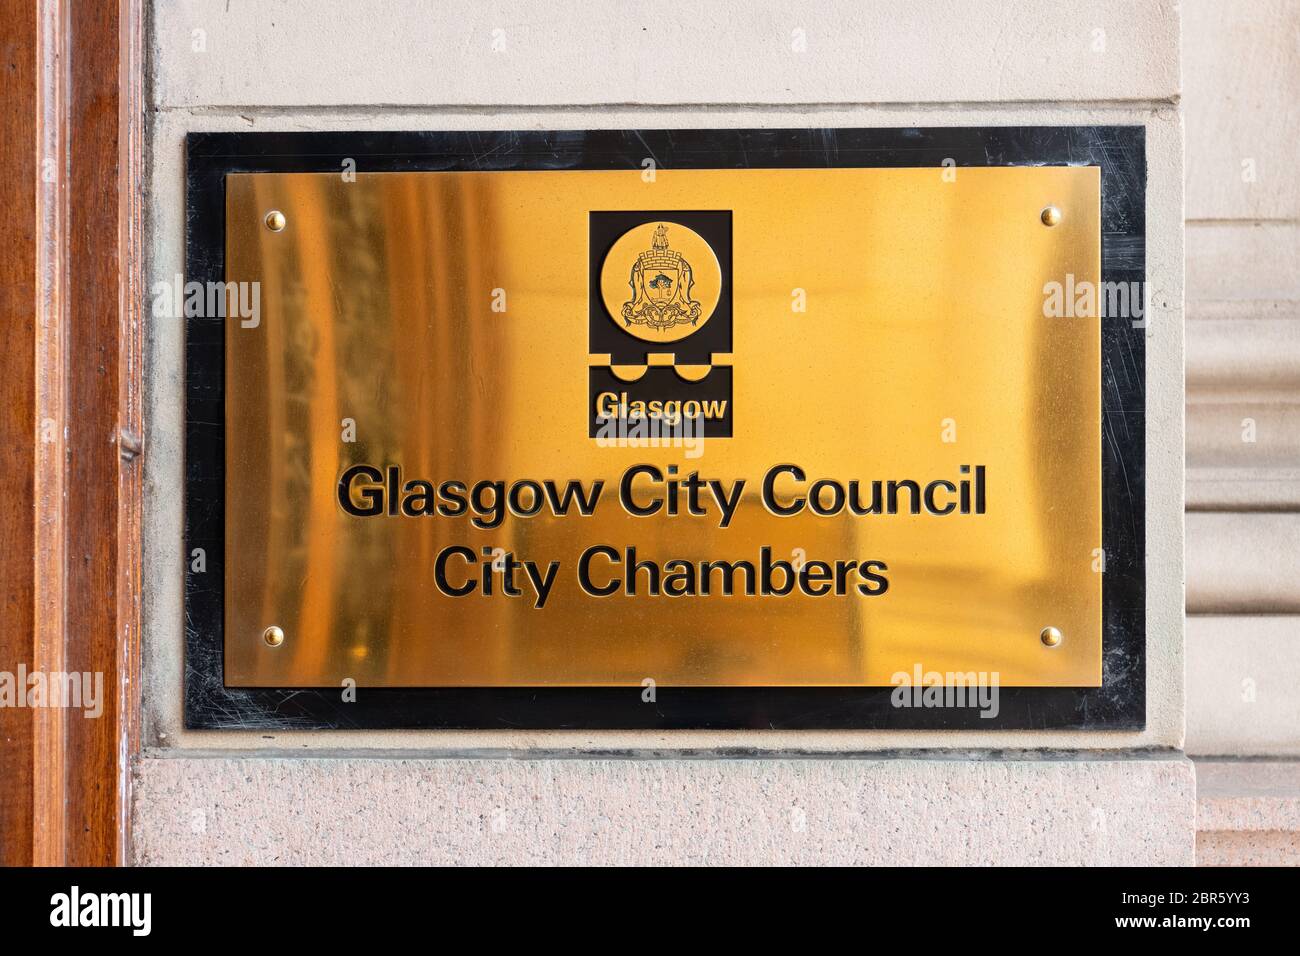 Glasgower Stadtrat Stadt Chambers Zeichen - George Square, Glasgow, Schottland, Großbritannien Stockfoto